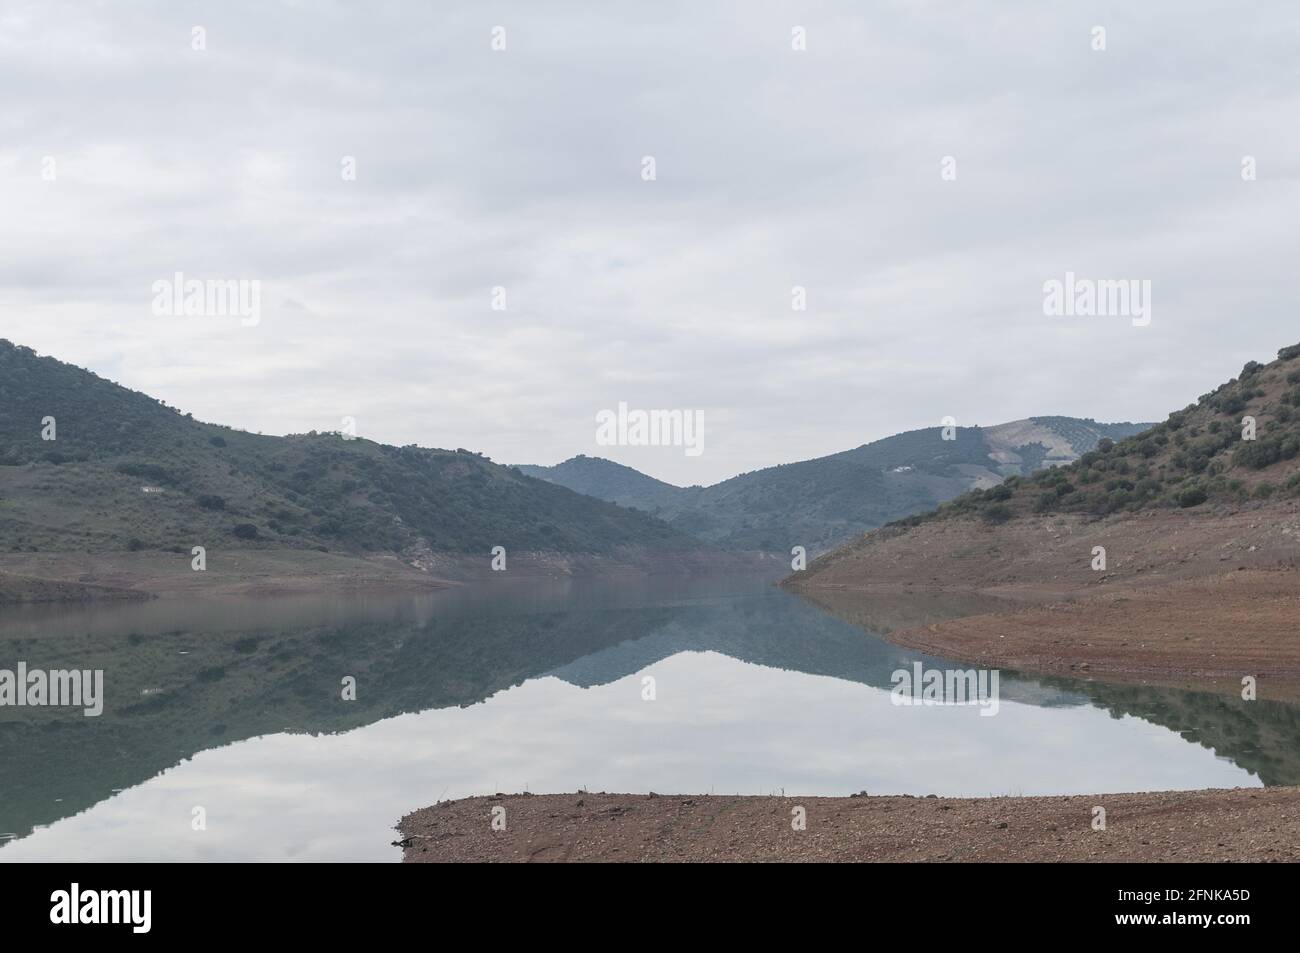 Vue imprenable sur les collines qui se reflète sur un lac tranquille en forme de miroir par temps pluvieux sous un ciel nuageux Banque D'Images